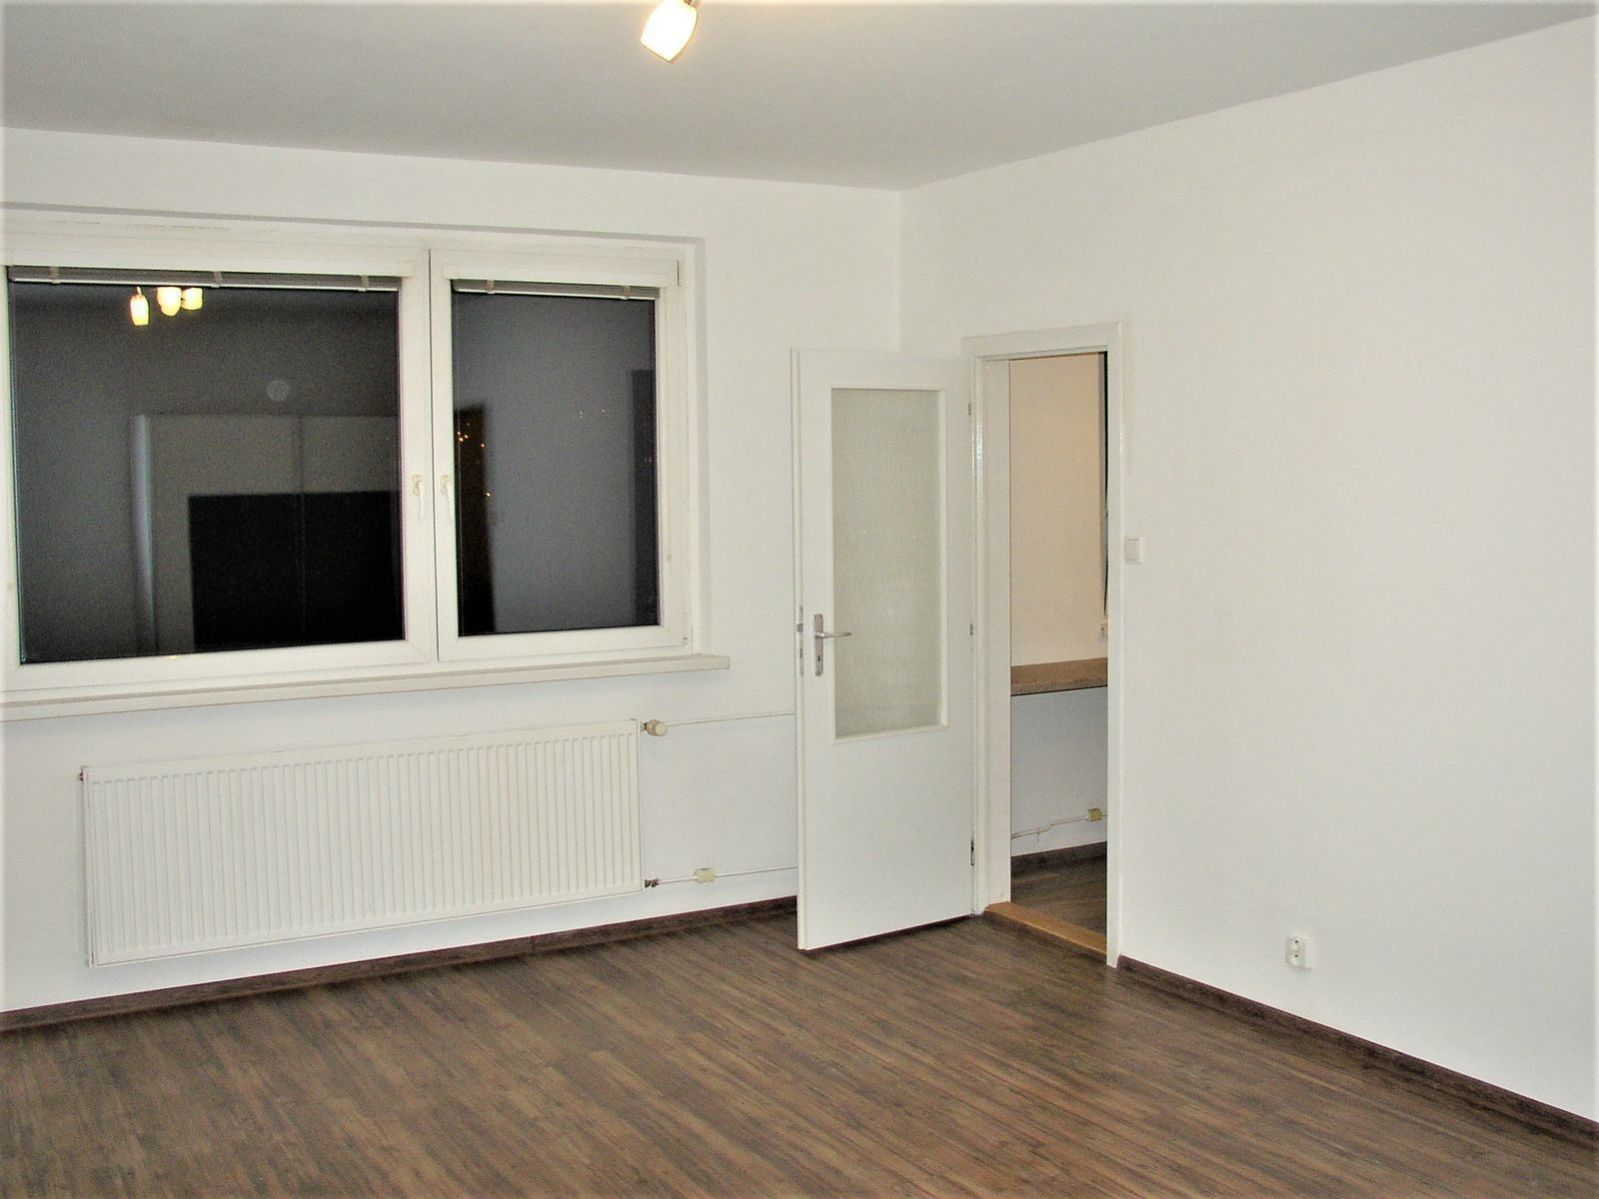 Zrekonstruovaný byt 1+1 v Nových Pavlovicích v Liberci..., obrázek č. 2